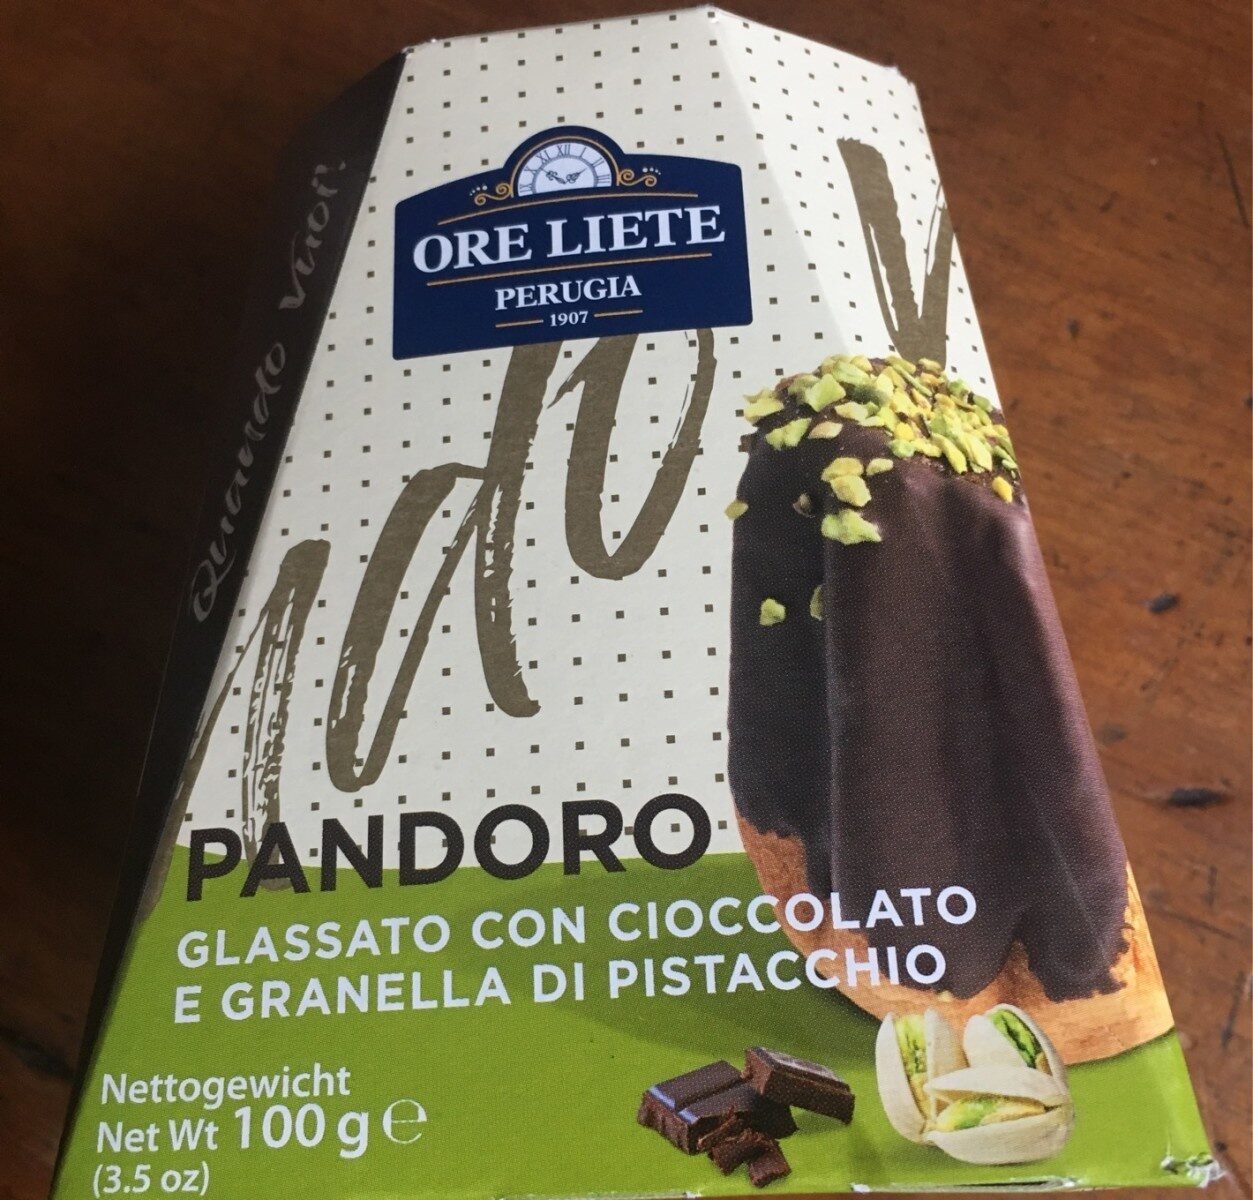 Pandoro cioccolato e pistacchio Ore liete - Prodotto - fr